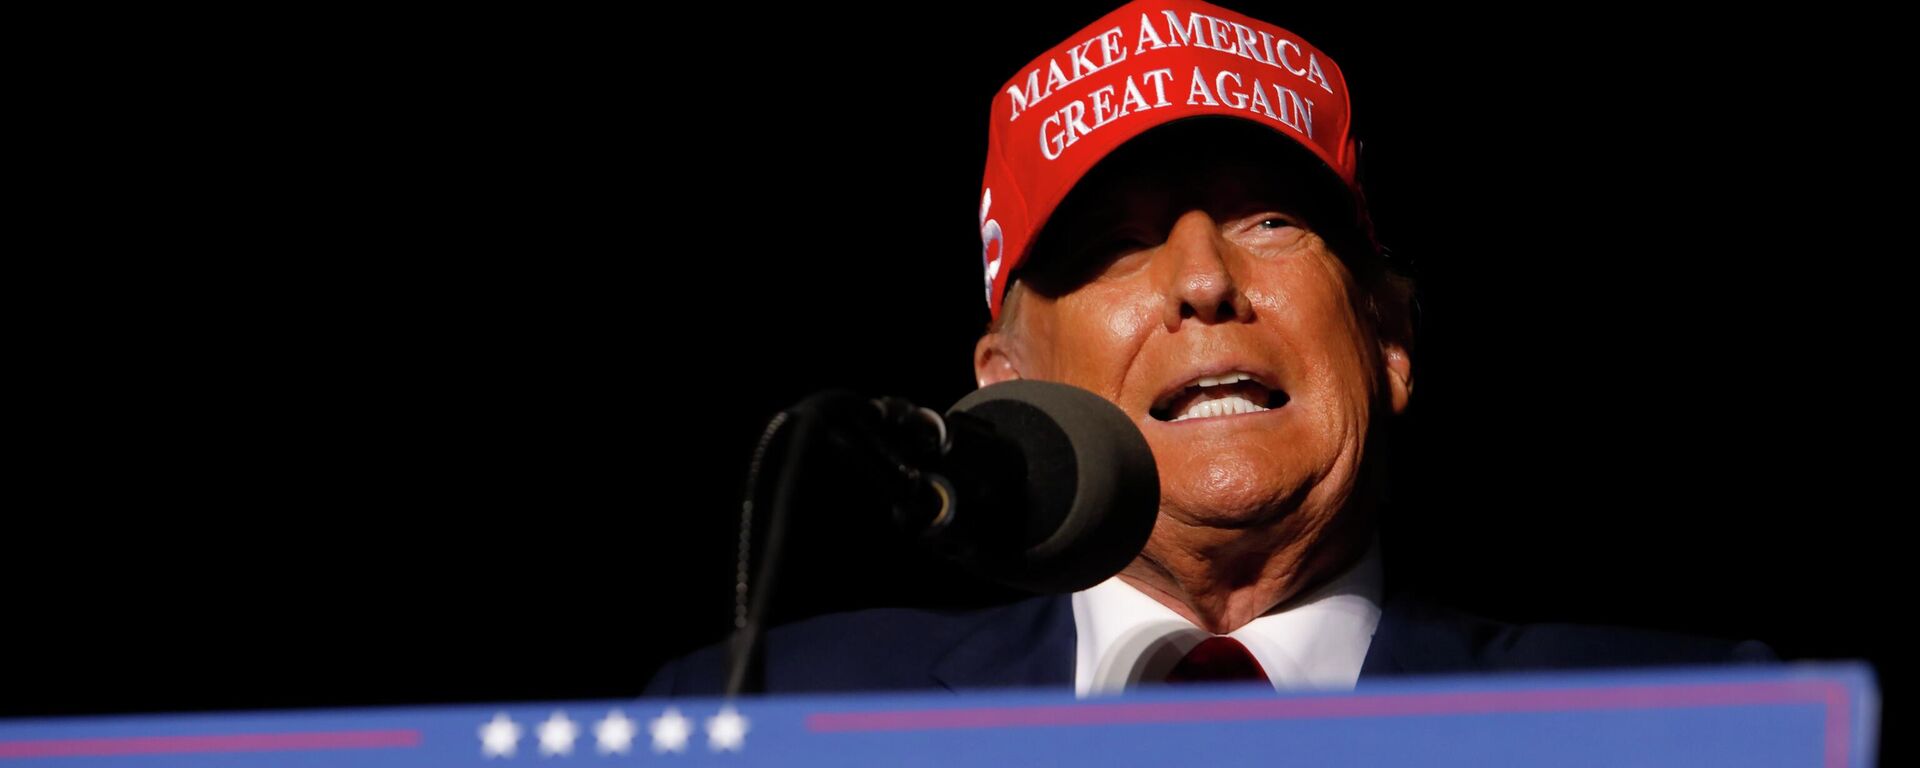 Donald Trump, ex-presidente dos EUA (2017–2021), fala durante comício em Latrobe, no estado da Pensilvânia, nos EUA, em 5 de novembro de 2022 - Sputnik Brasil, 1920, 06.11.2022